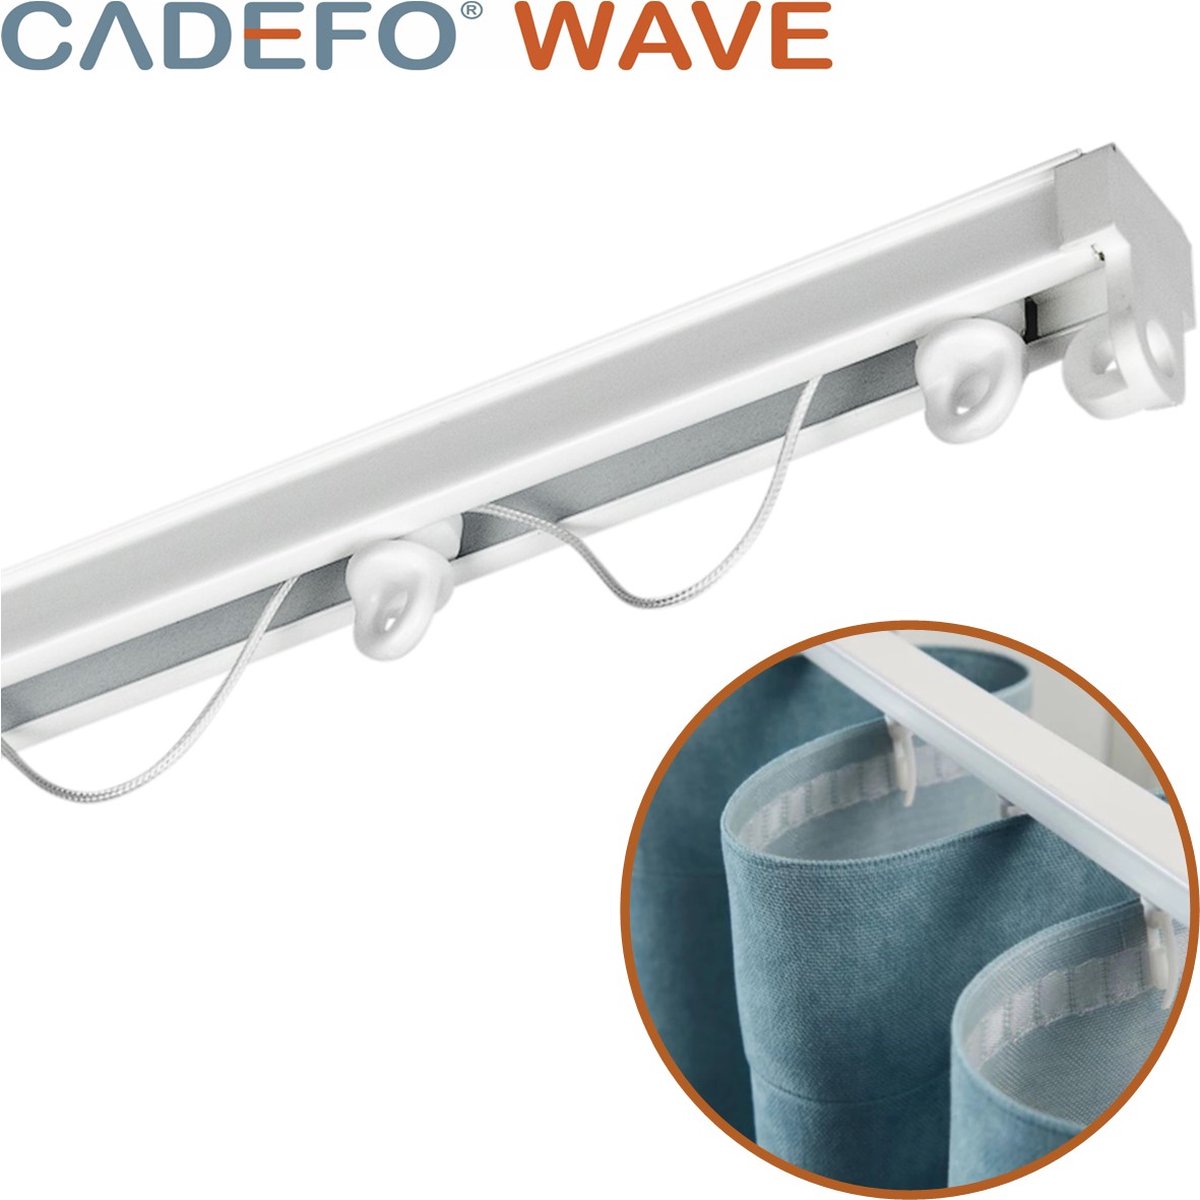 CADEFO WAVE (351 - 400 cm) Gordijnrails - Compleet op maat! - UIT 1 STUK - Leverbaar tot 6 meter - Plafondbevestiging - Lengte 367 cm